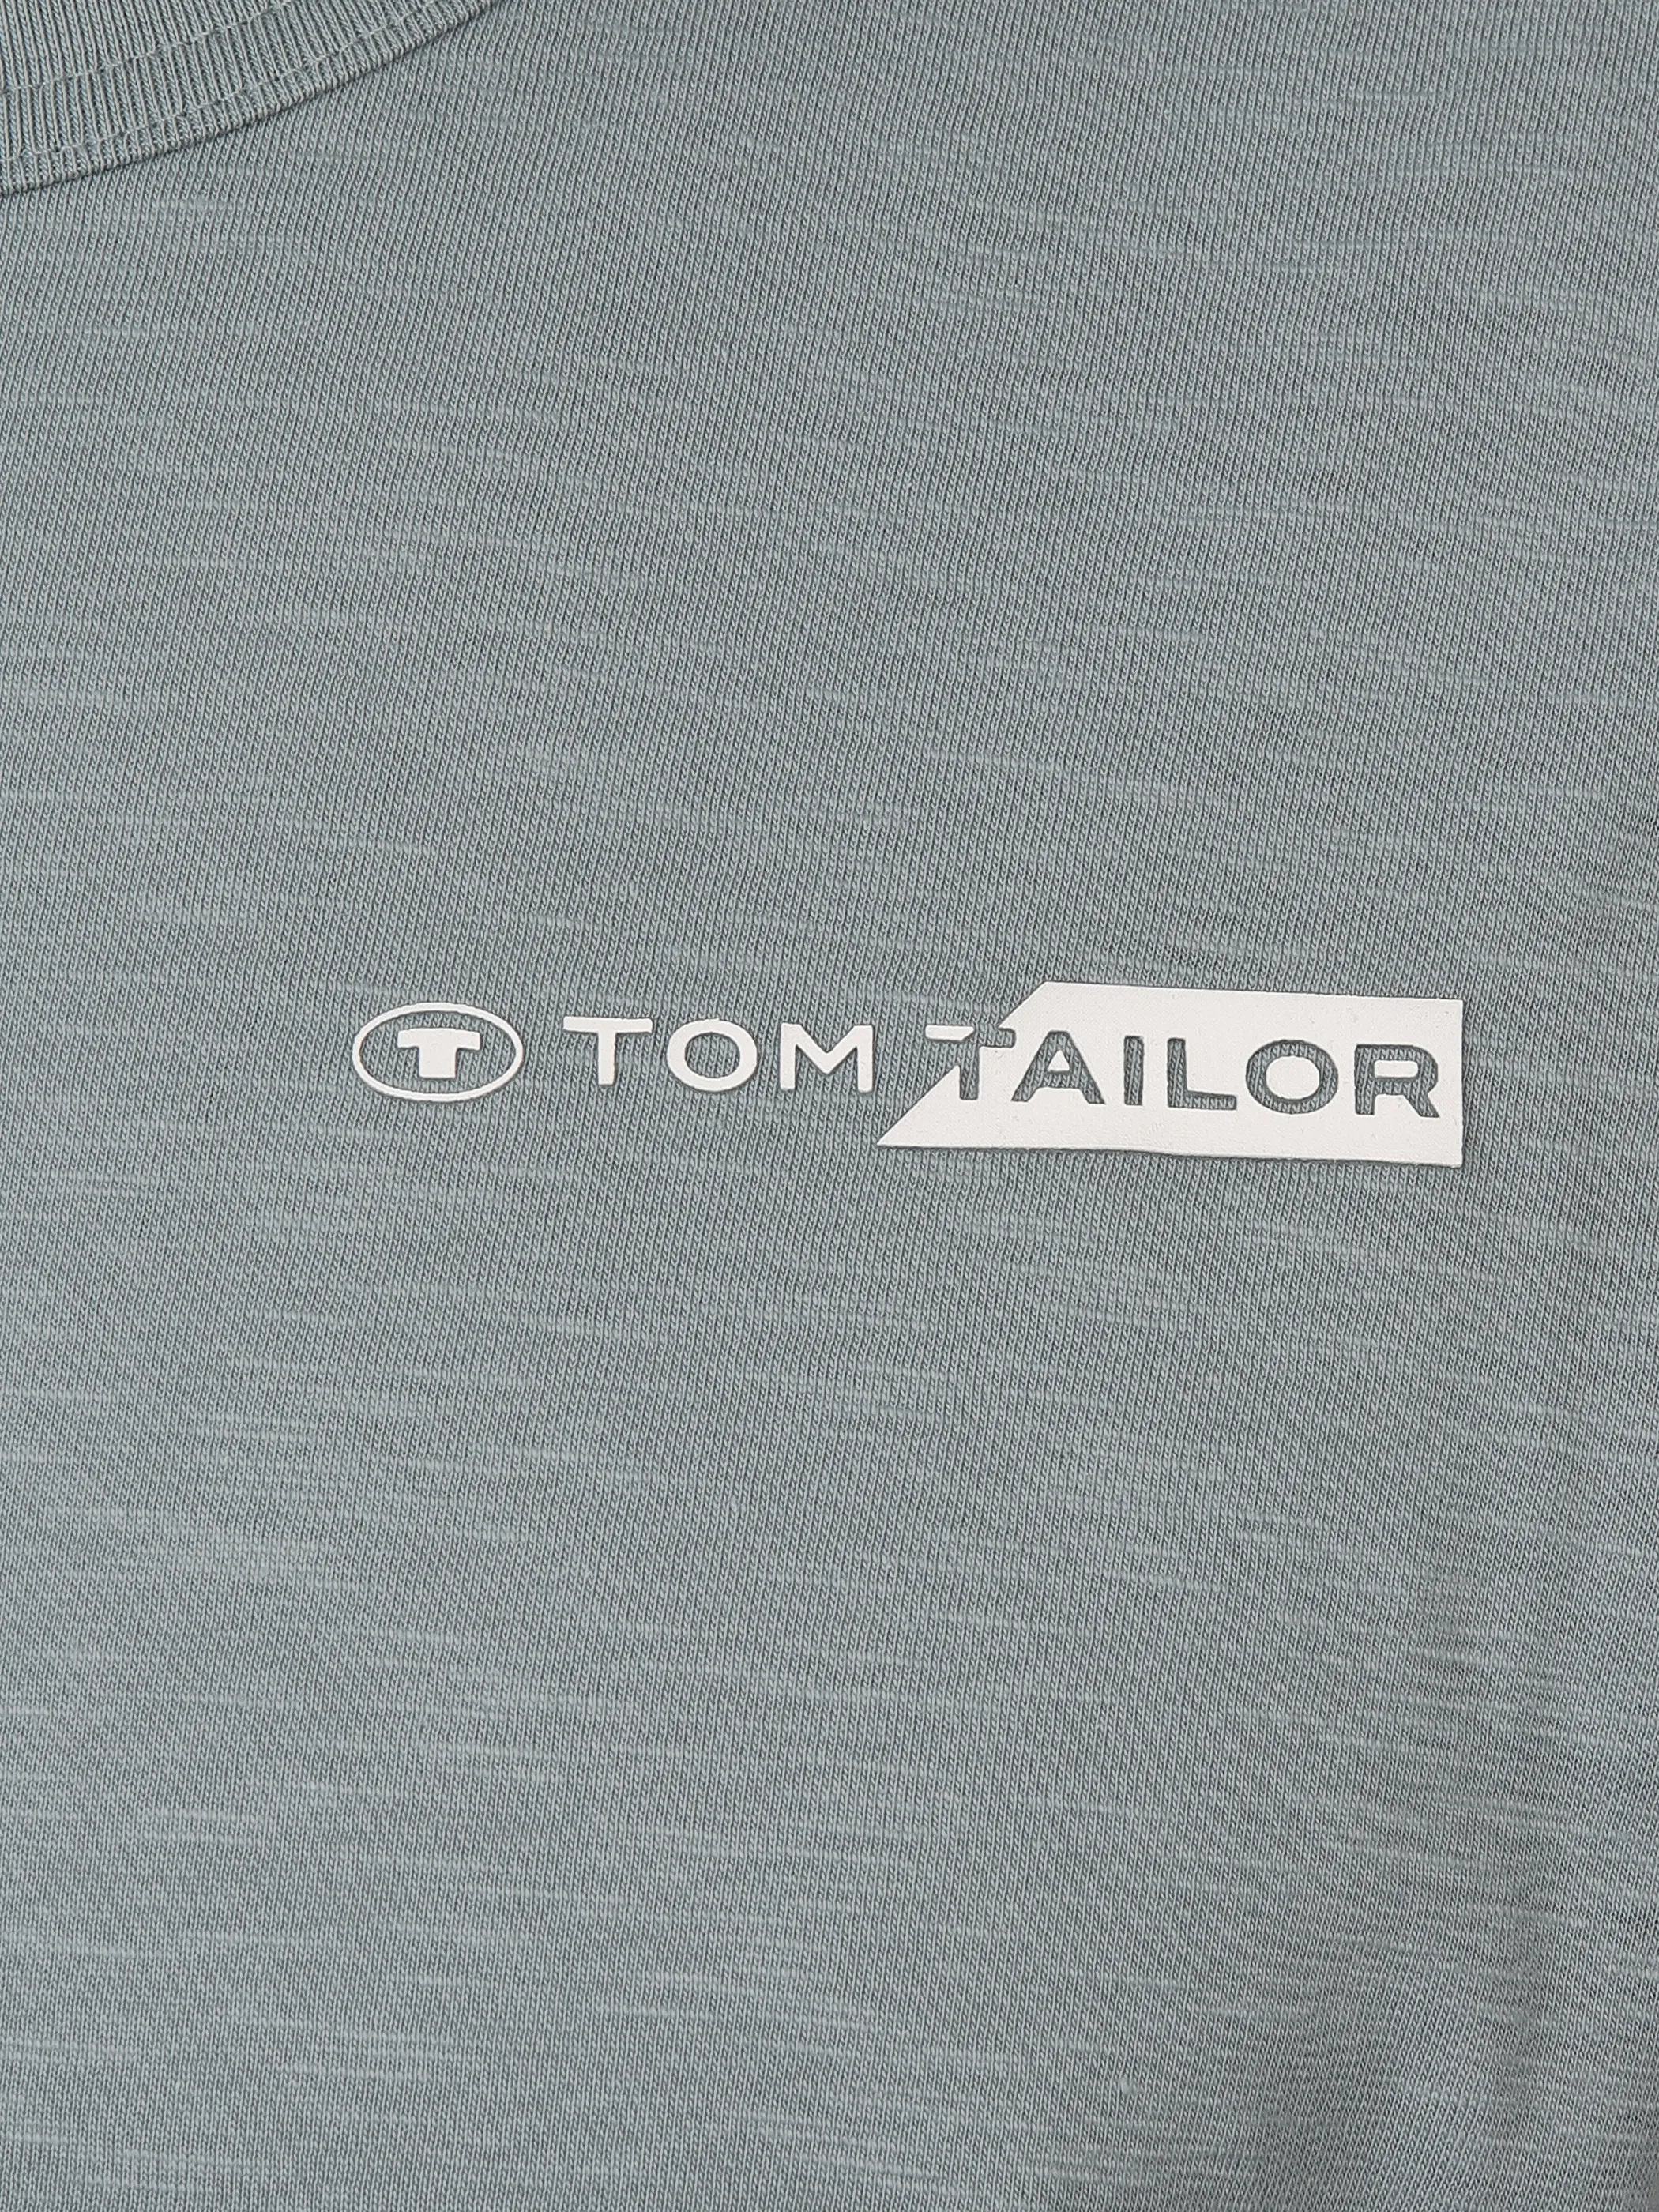 Tom Tailor 1040821 NOS printed t-shirt Logo Grau 890933 27475 3